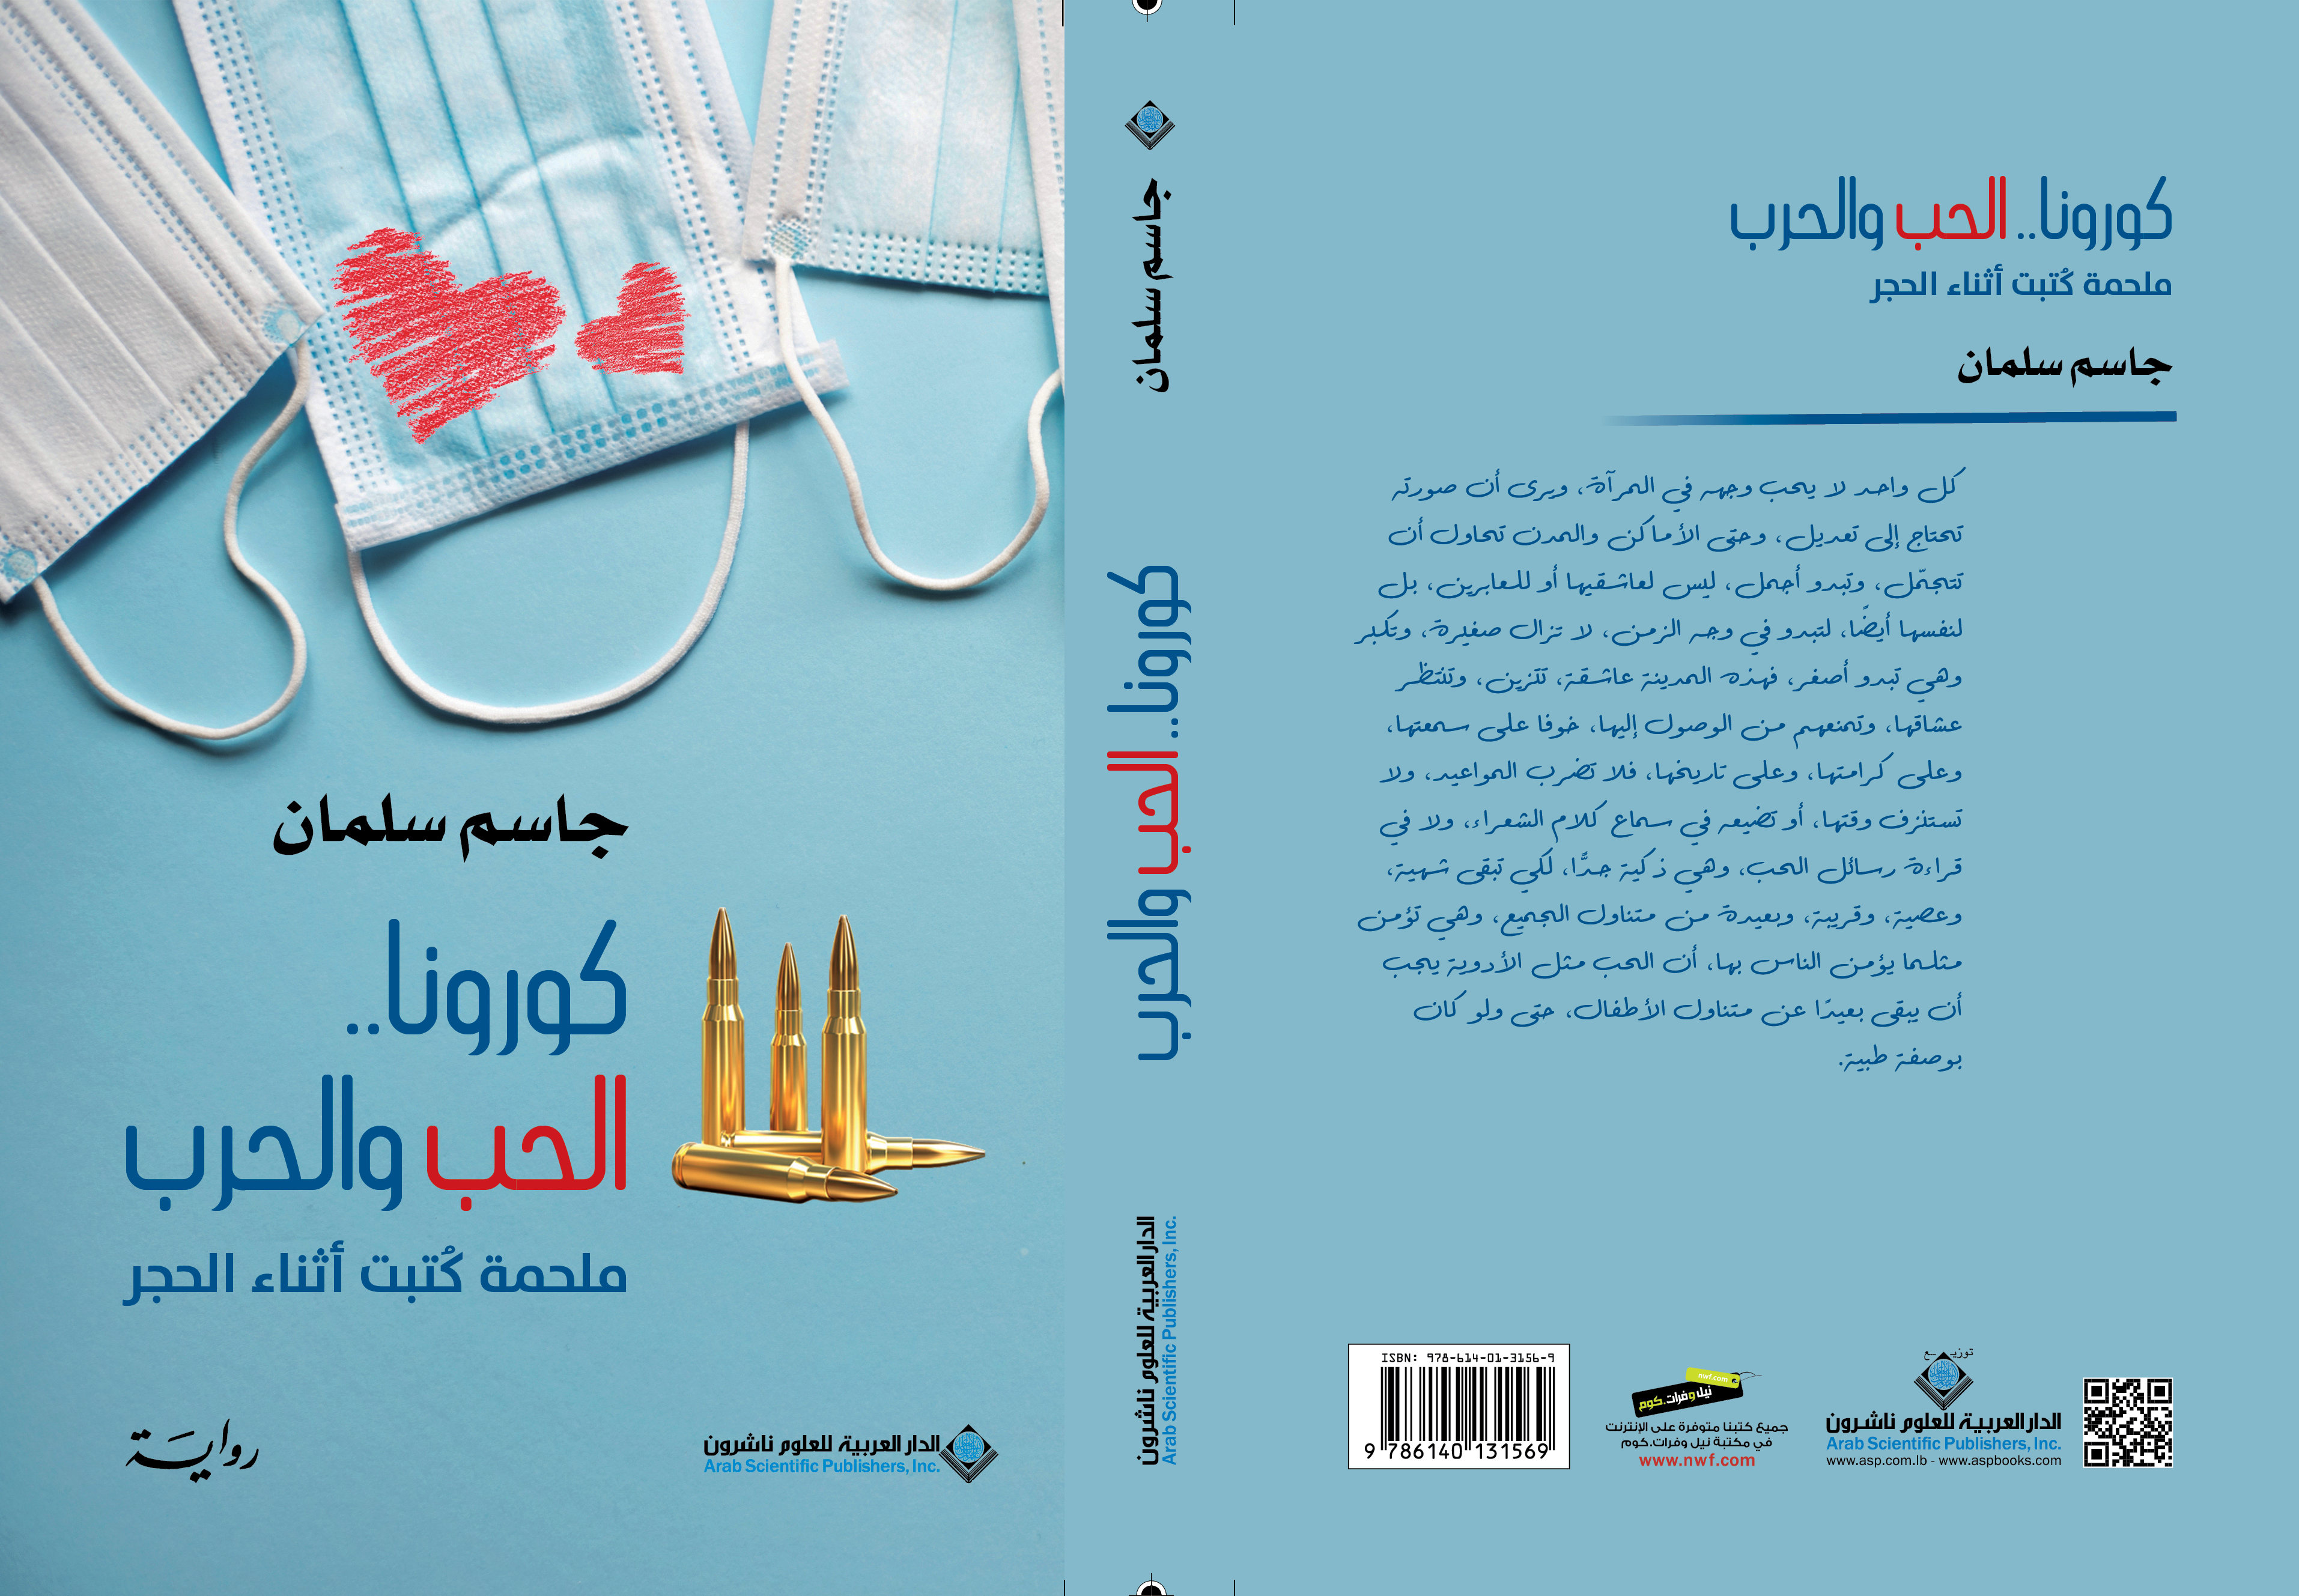 "كورونا الحب والحرب"... أول رواية عن الوباء ومشاكل الخليج